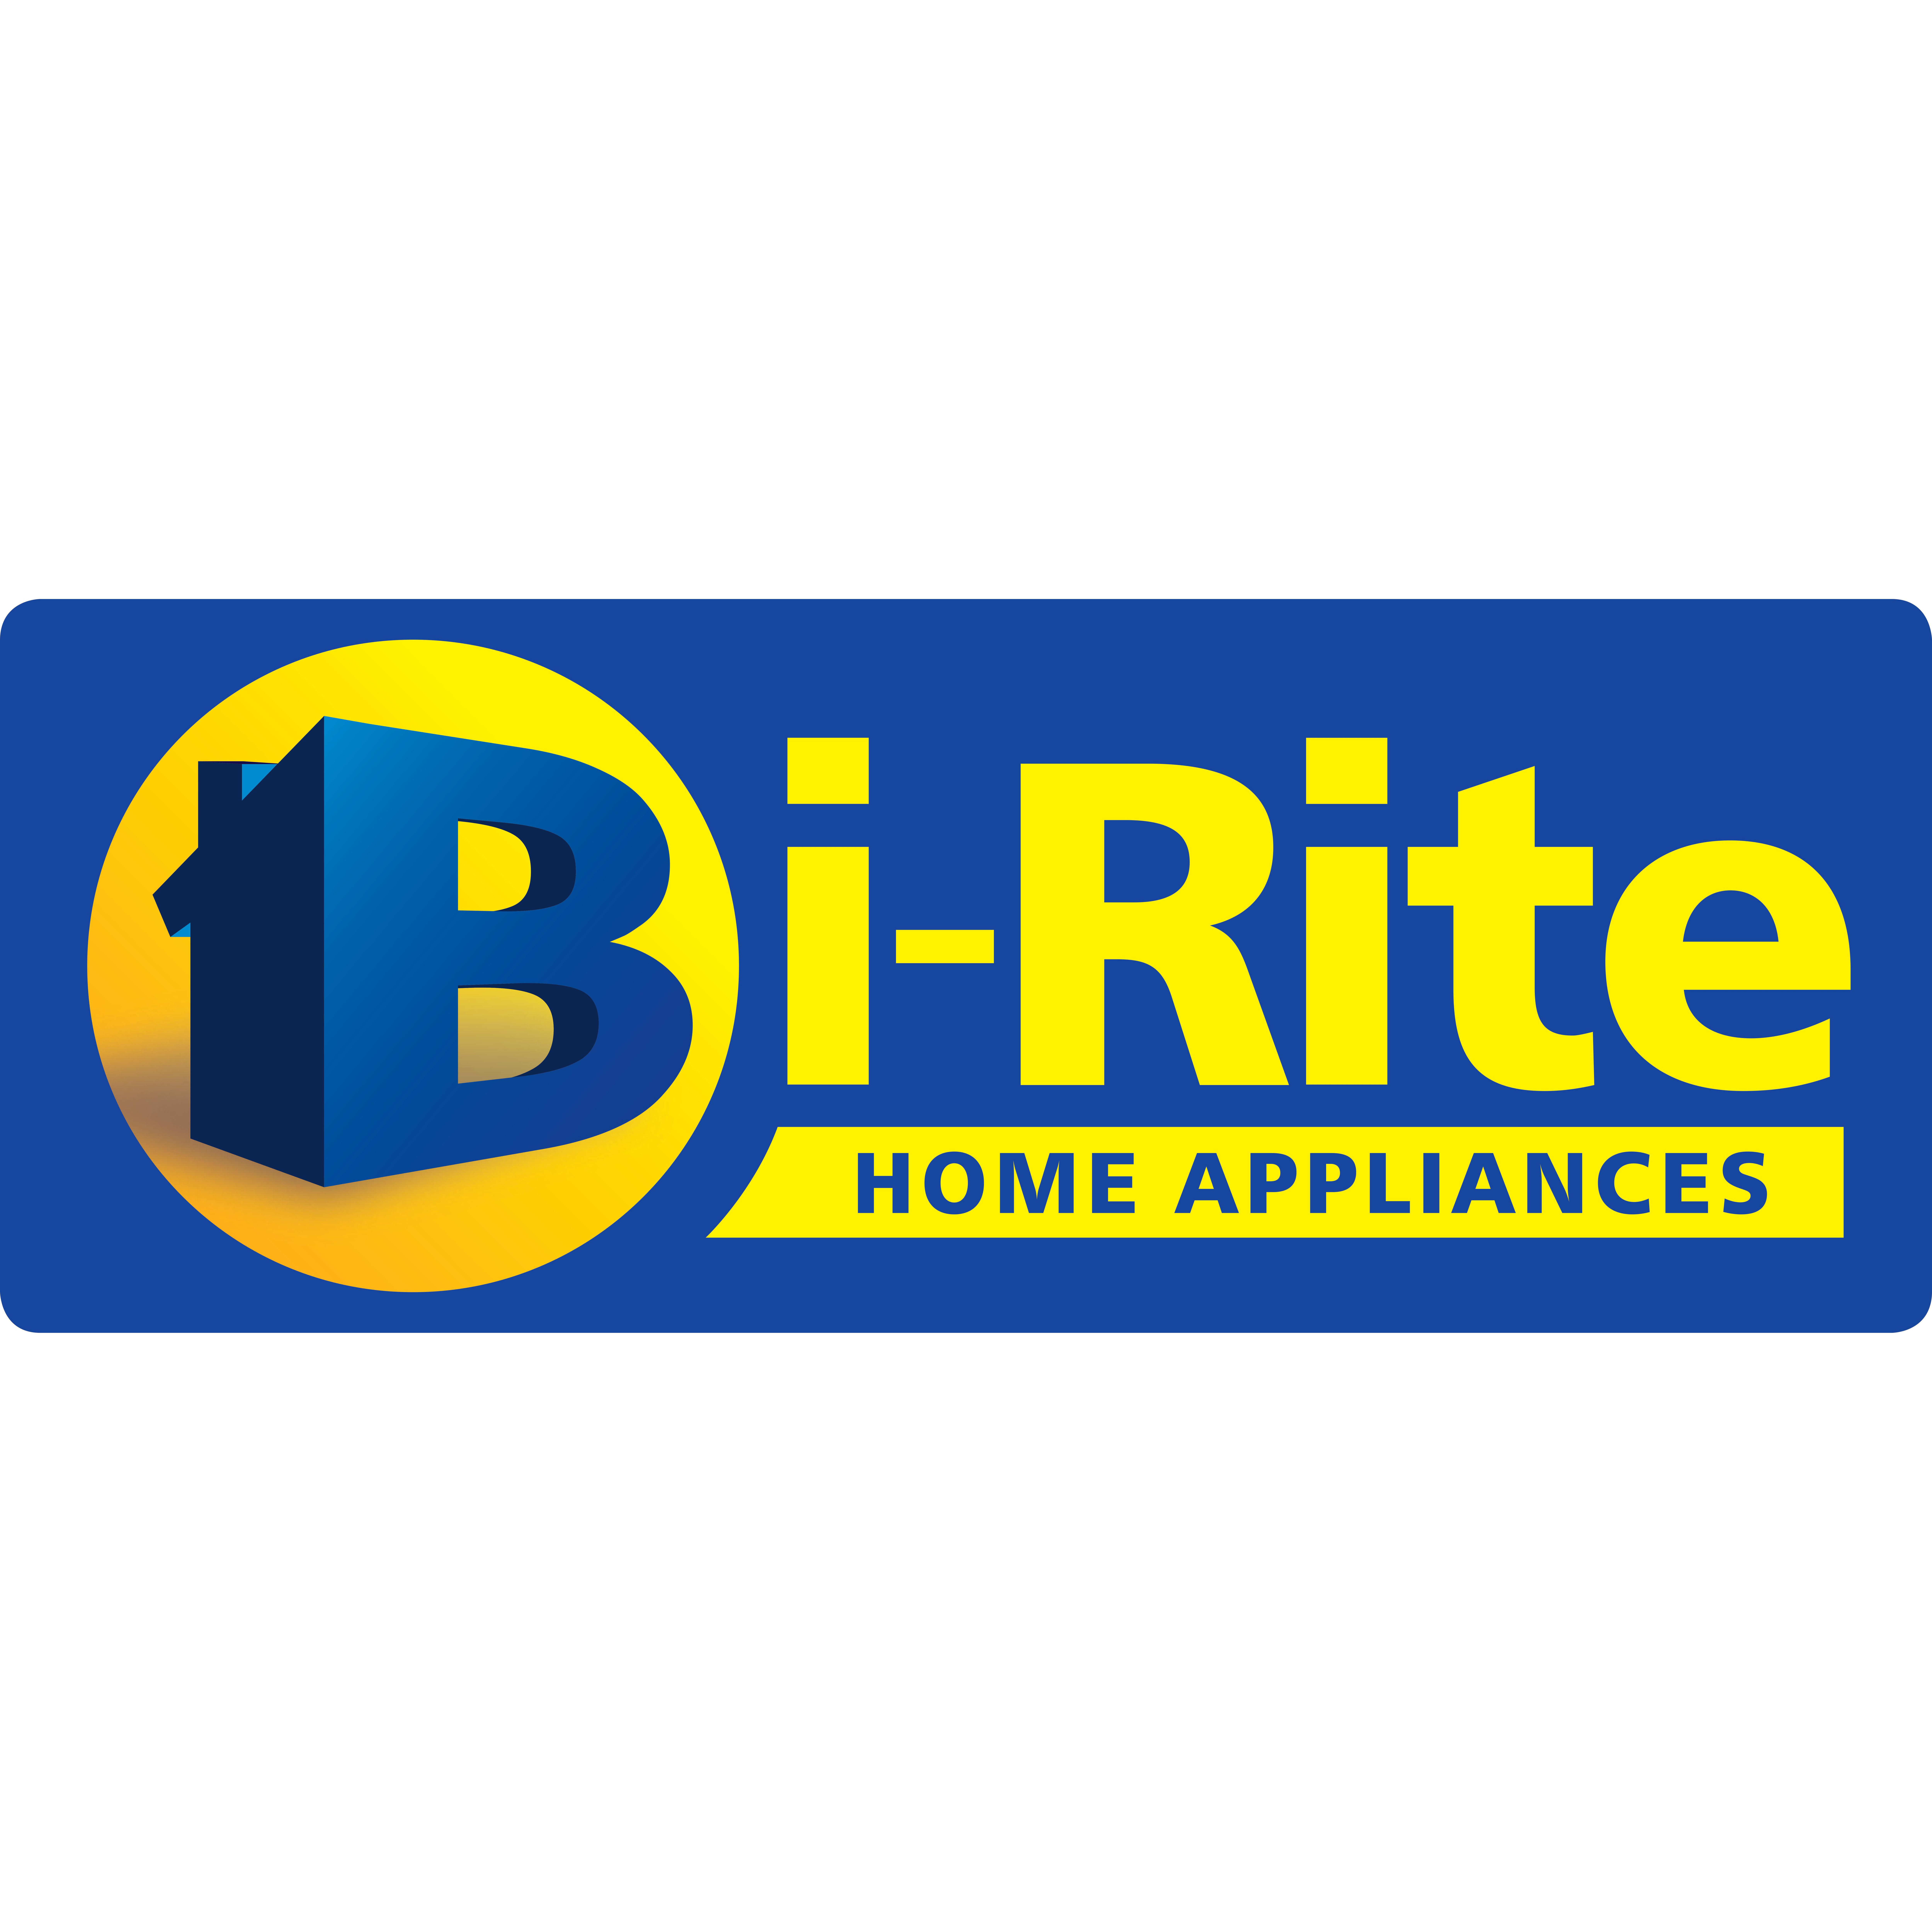 Narrabri Bi-Rite Home Appliances - Narrabri, NSW 2390 - (02) 6799 1310 | ShowMeLocal.com